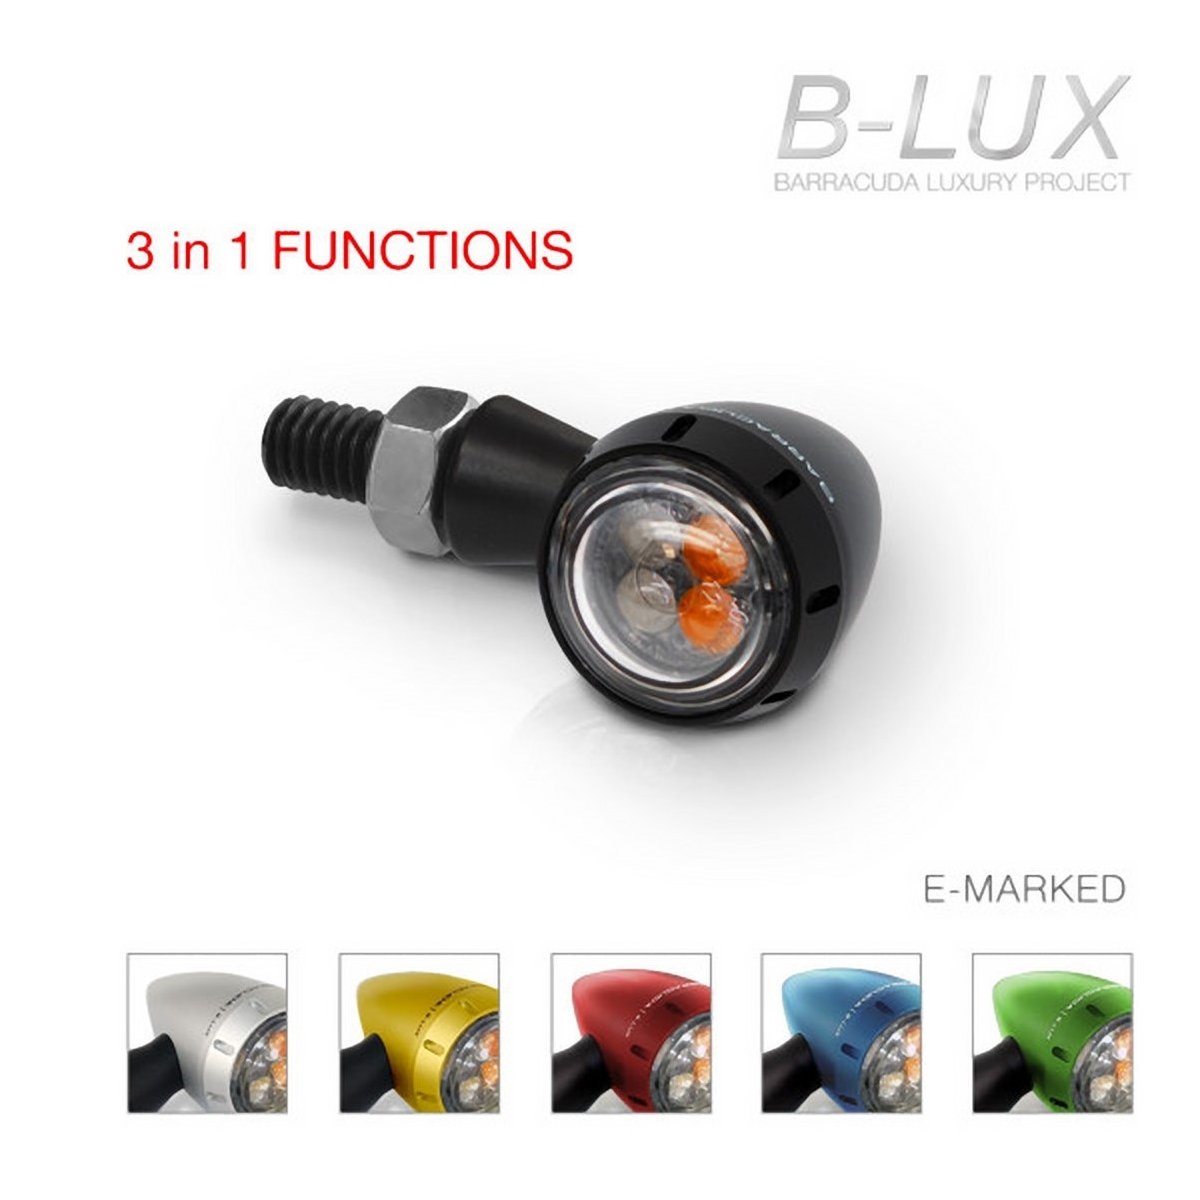 Coppia Frecce LED Universali Omologate S-LED 3 B-LUX 3 in 1